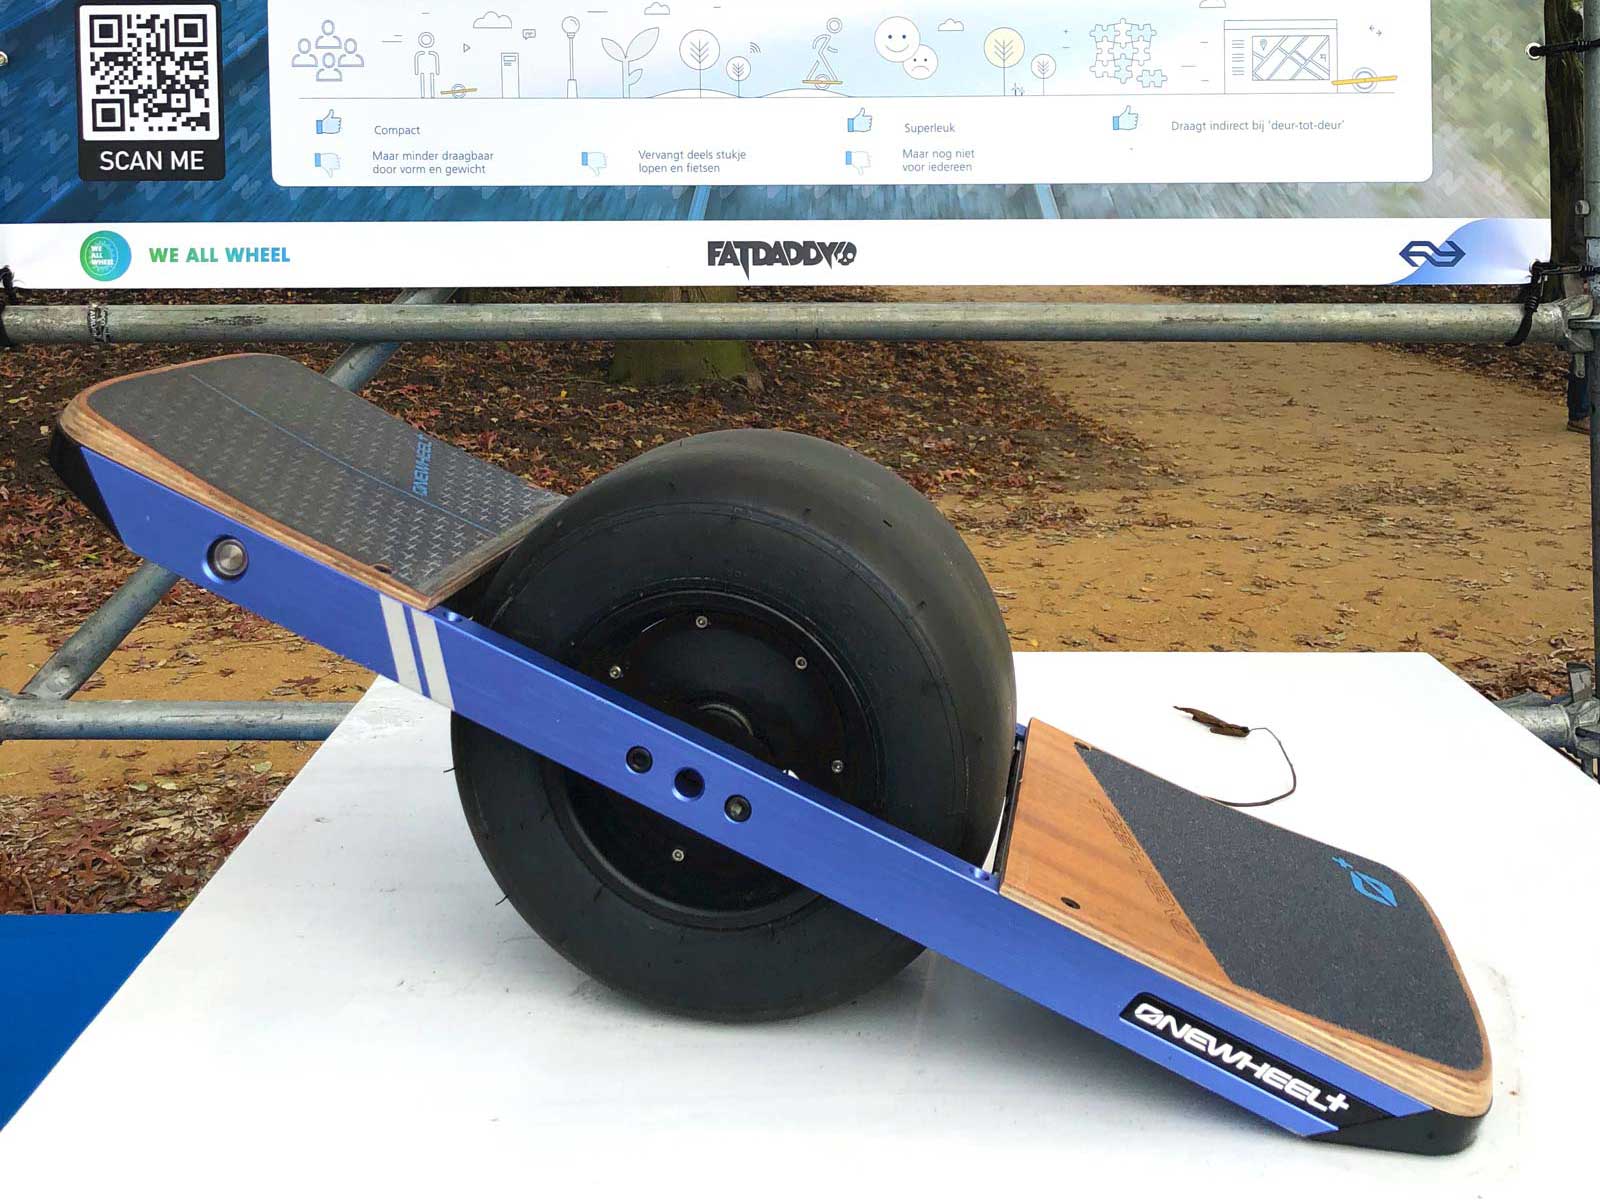 Skateboard mit einem dicken Rad in der Mitte